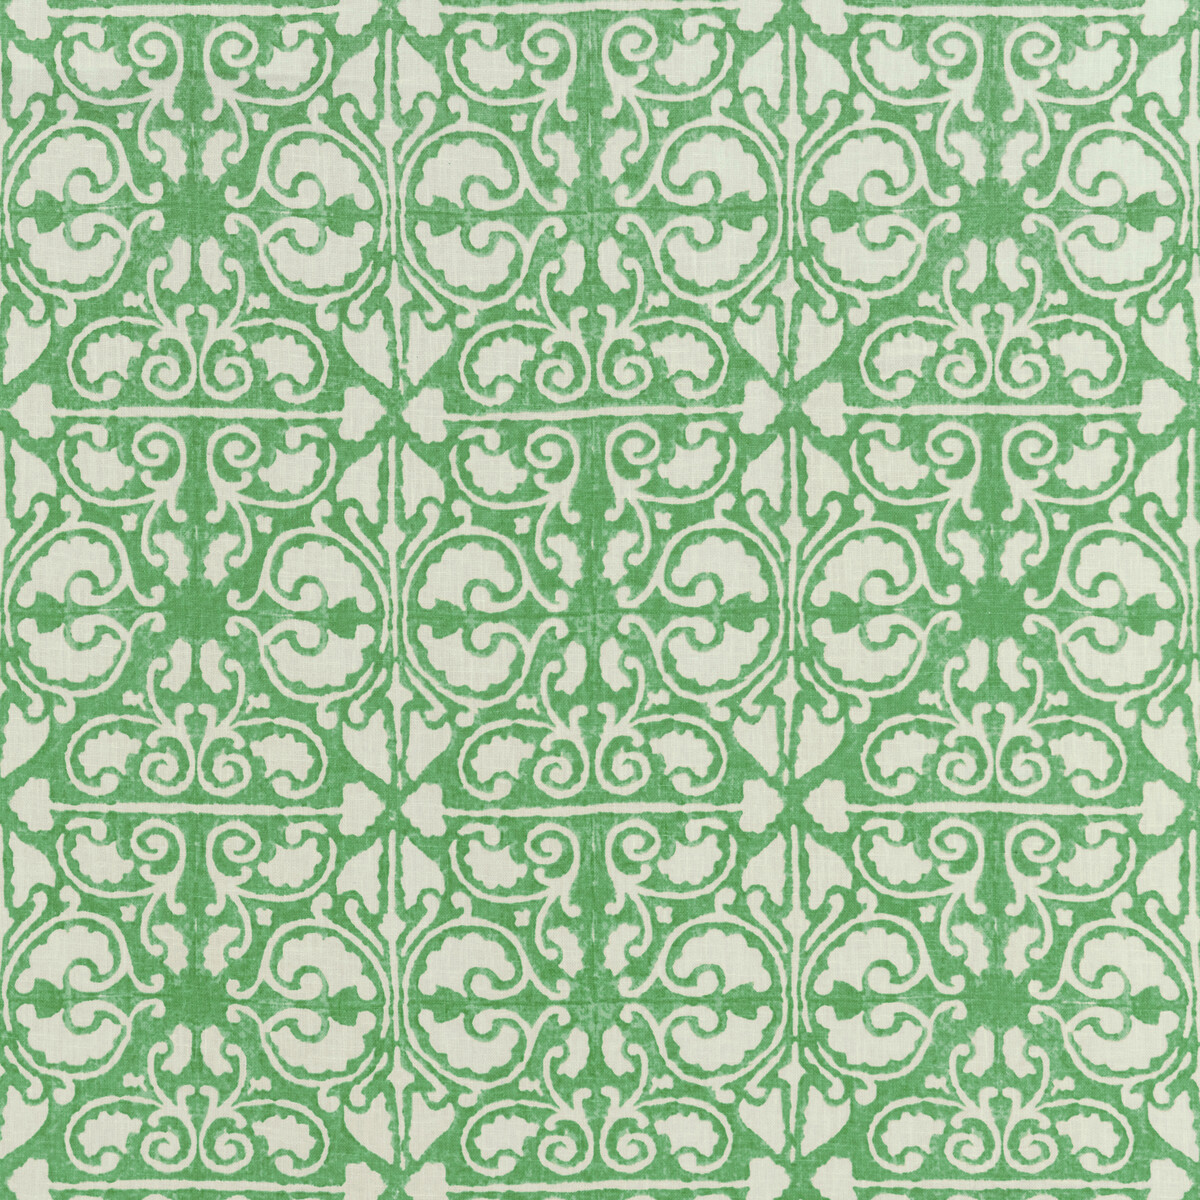 Kravet Basics Agra Tile.3.0 Kravet Basics Multipurpose Fabric in Agra Tile-3/Green/White/Emerald